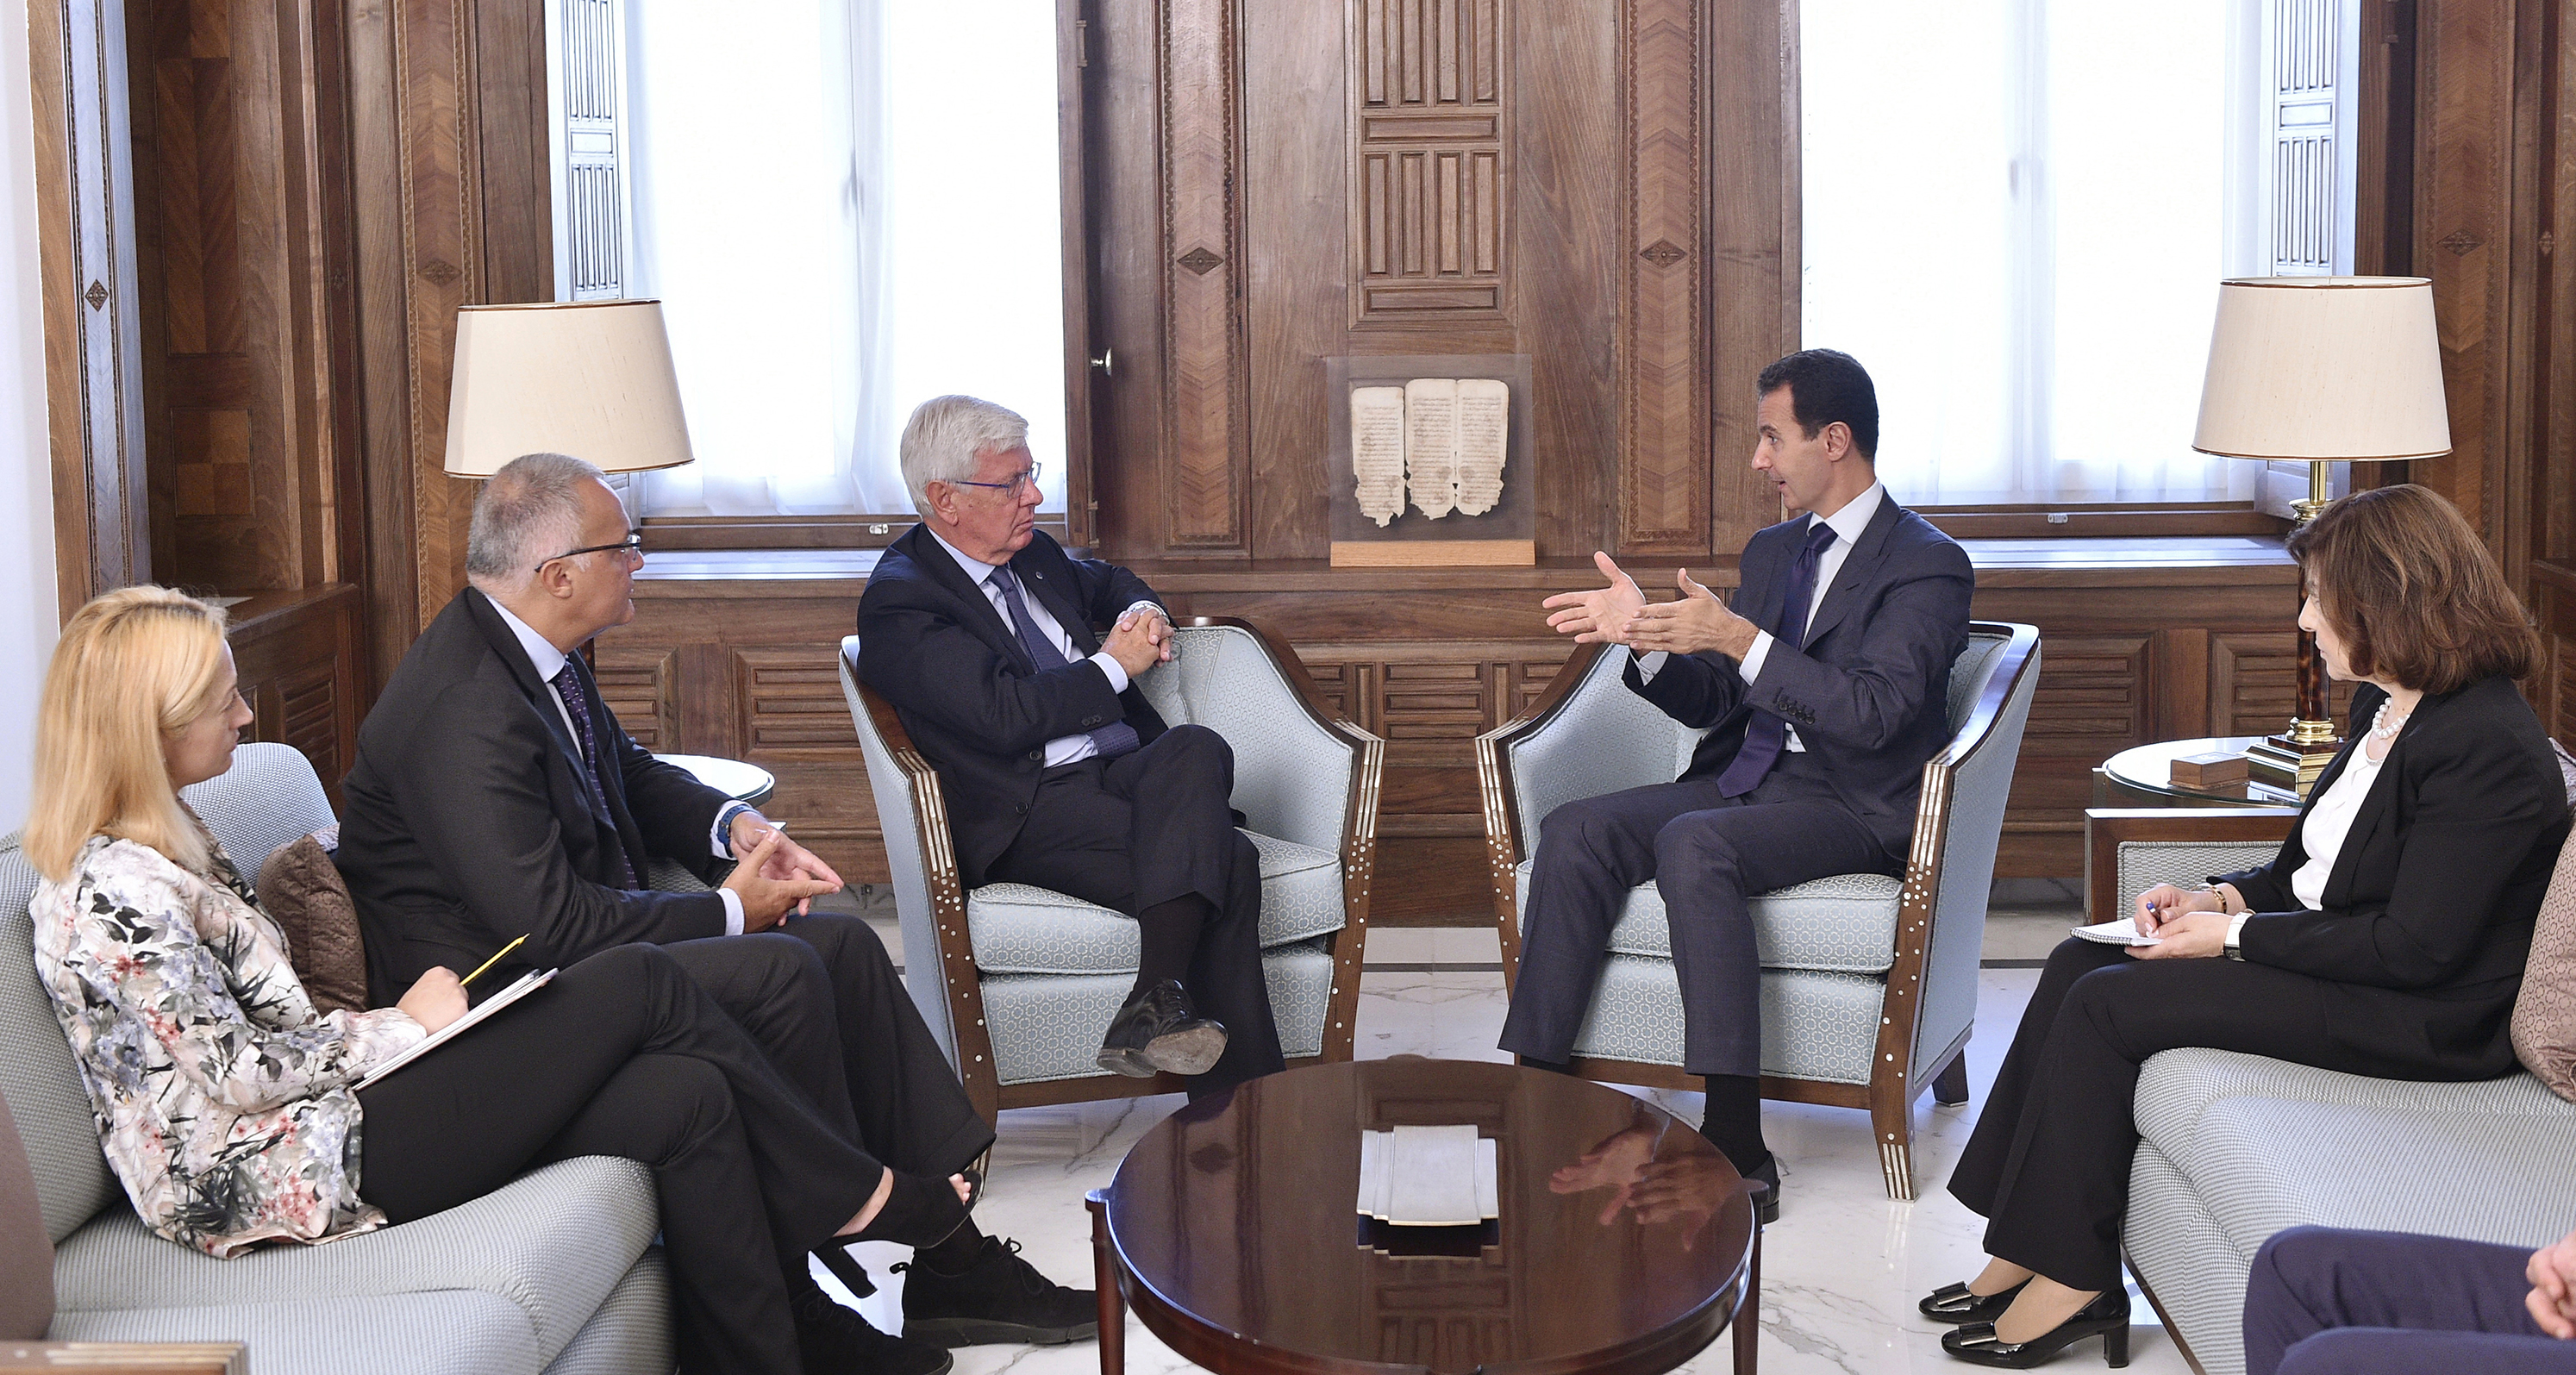 Bashar al Assad incontra una delegazione del Parlamento italiano guidata dal senatore di Forza Italia, Paolo Romani, 17/09/2017. Credits to: SANA.